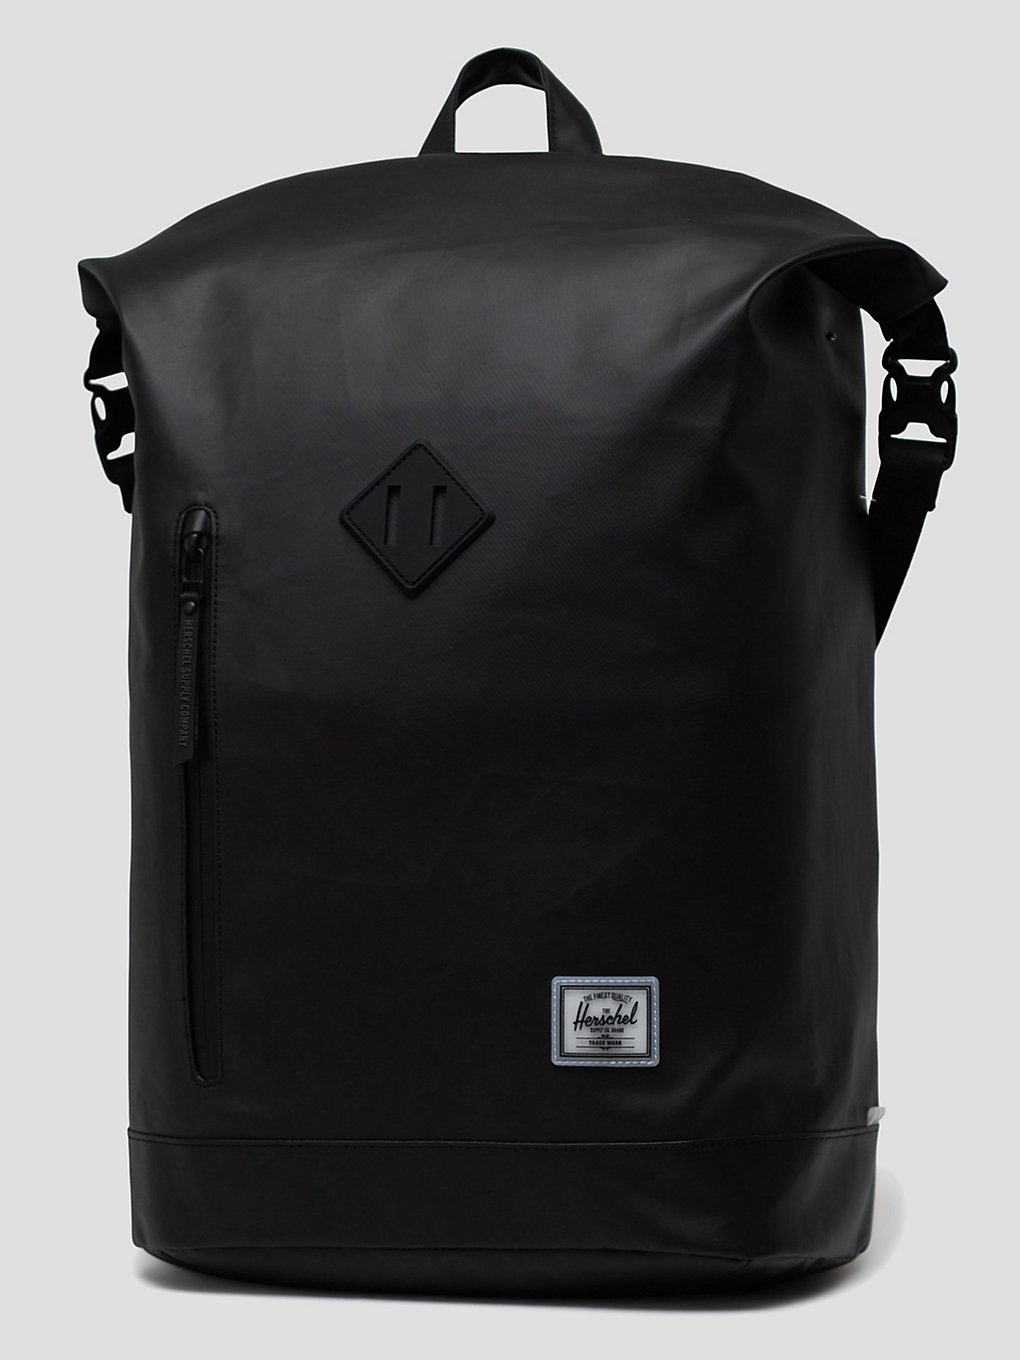 Herschel Roll Top Backpack black